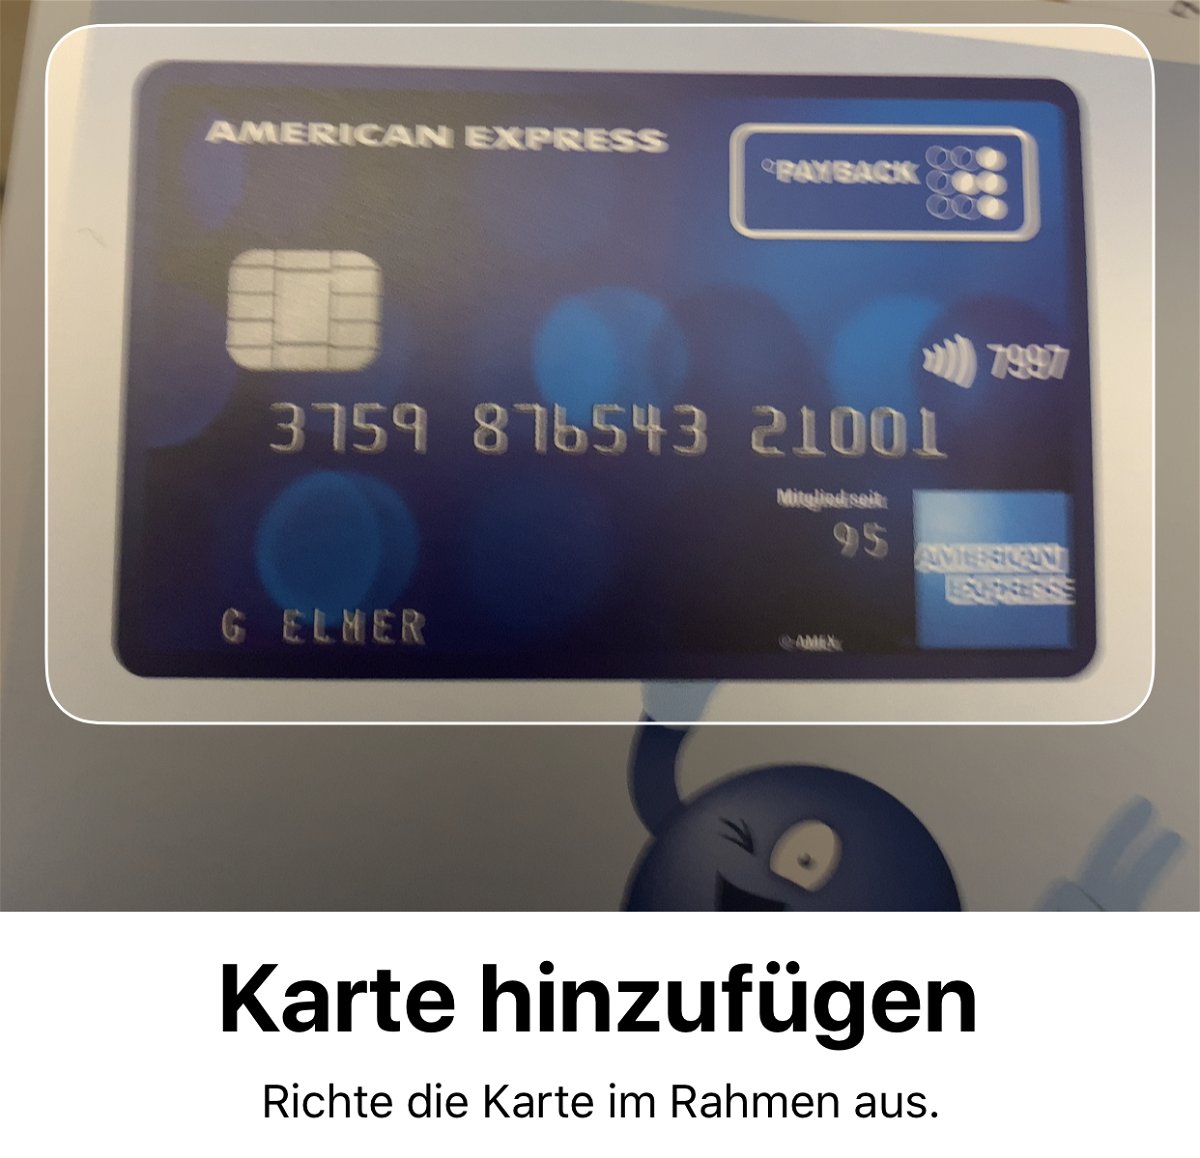 Hinzufügen einer Kreditkarte für Apple Pay am iPhone